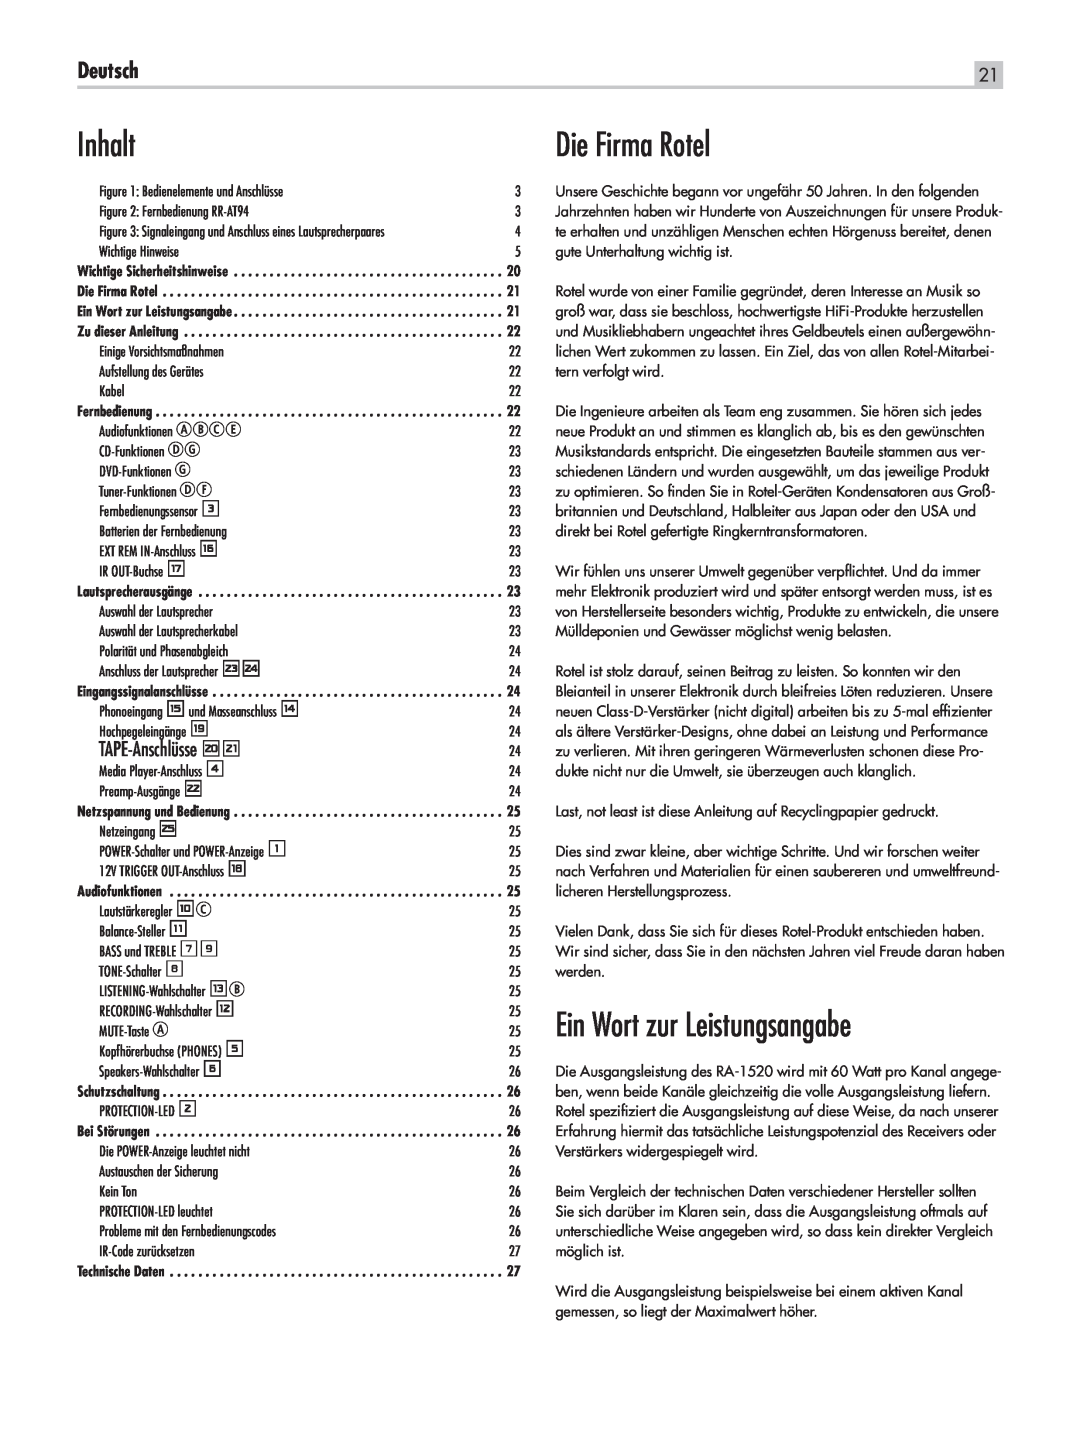 Rotel RA-1520 owner manual Inhalt, Die Firma Rotel, Ein Wort zur Leistungsangabe, Deutsch, TAPE-Anschlüsseio 